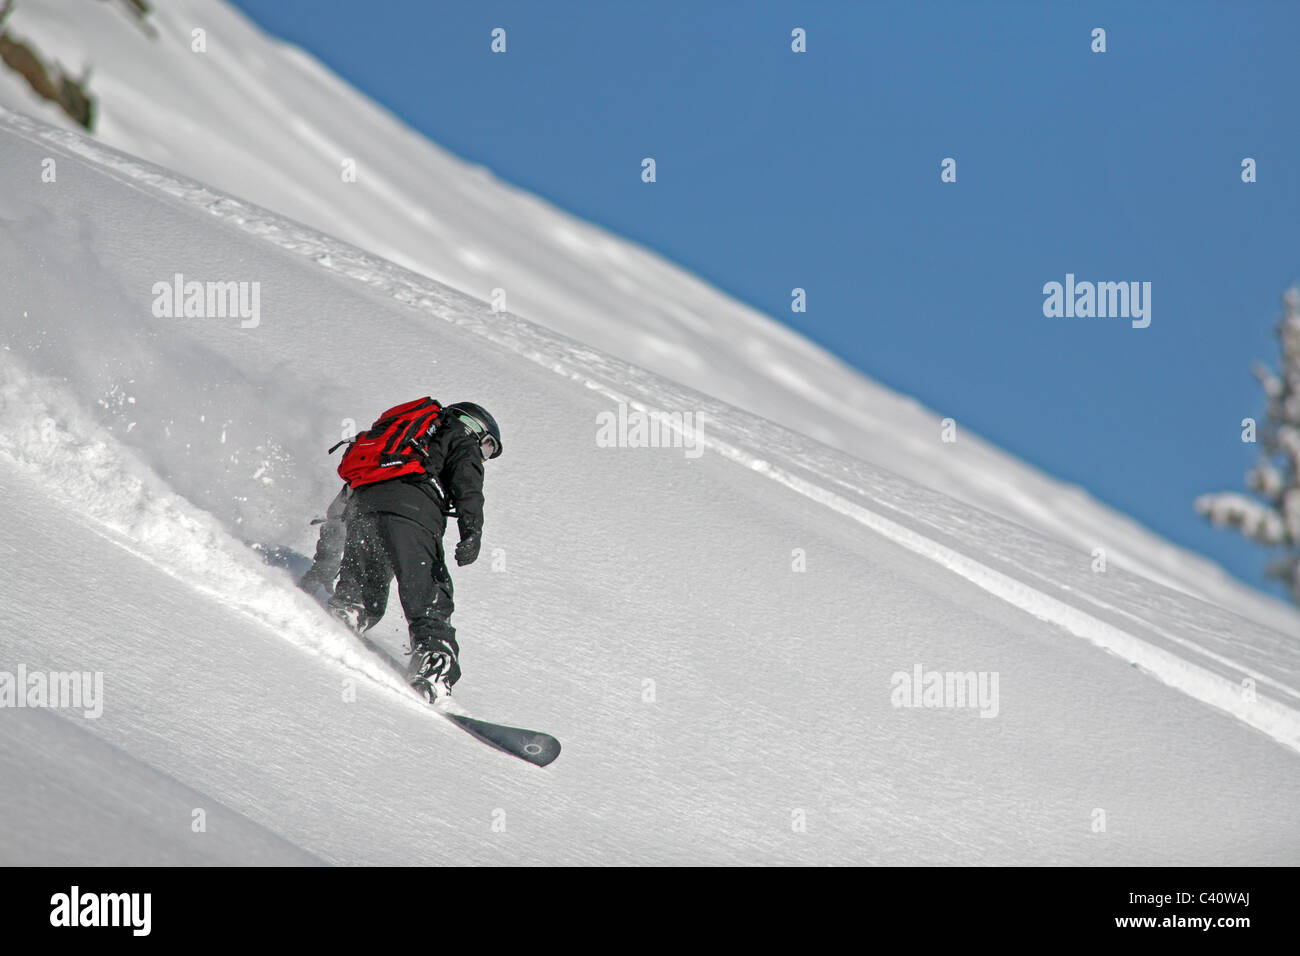 Snowboarder jouit de poudreuse fraîche, en hors piste de ski de Brighton. Salt Lake City, Utah, United States, Amérique du Nord Banque D'Images